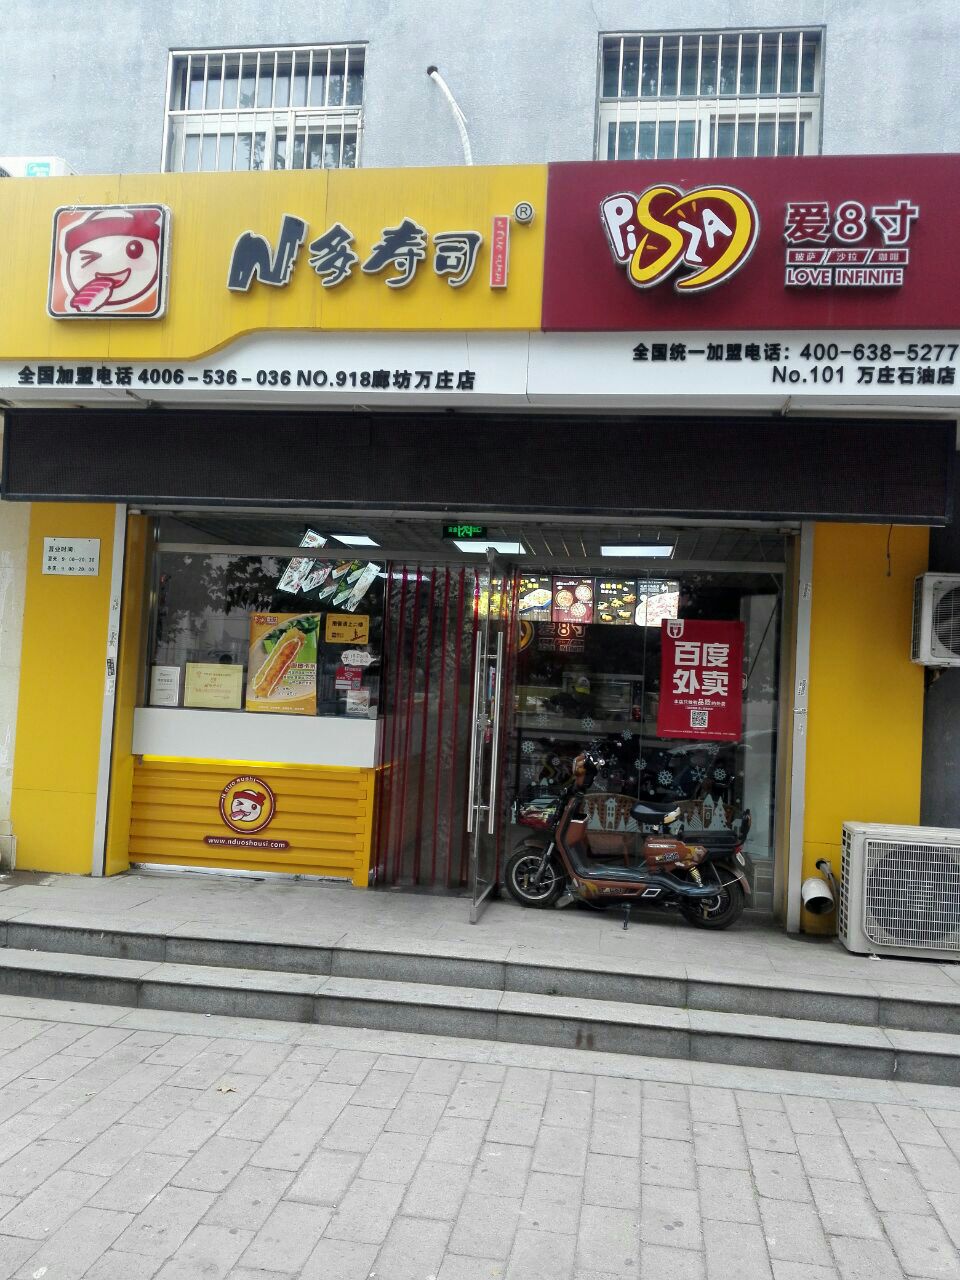 N多寿司门店图片